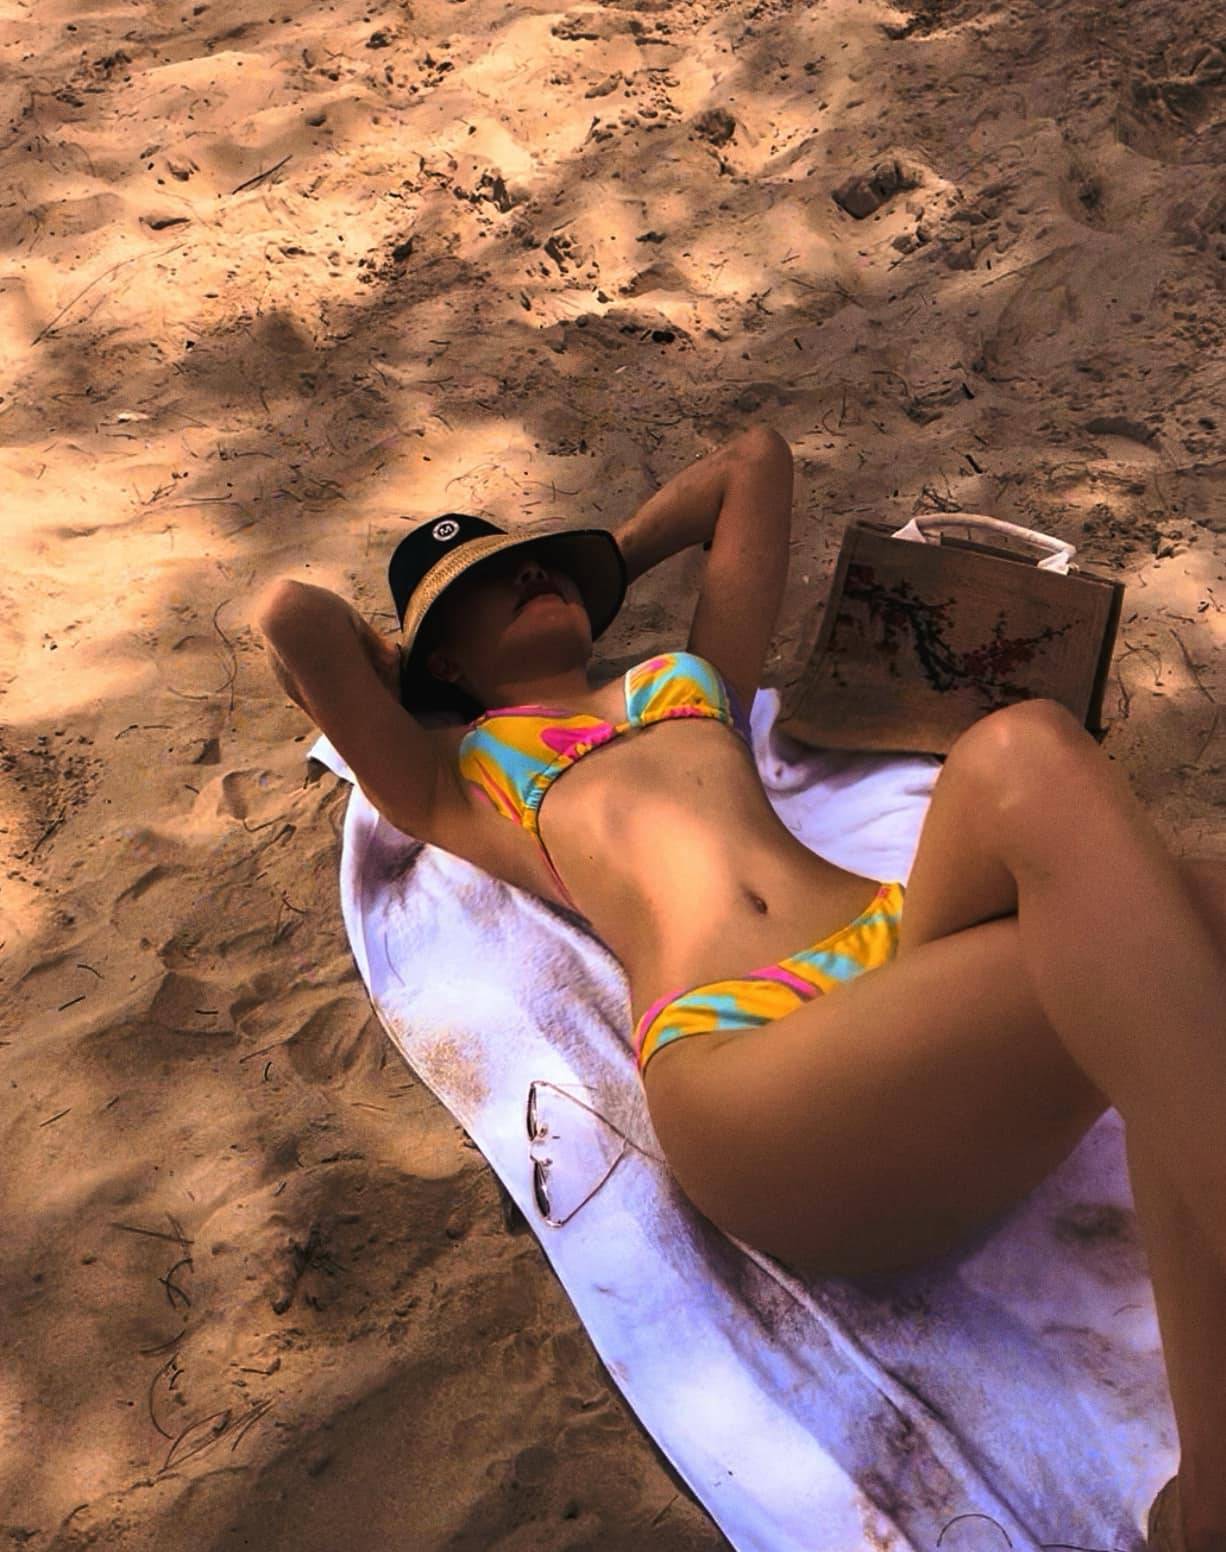 'No mắt' với loạt ảnh bikini nóng bỏng của Trà Ngọc Hằng, vòng eo 'con kiến' ngang cơ Ngọc Trinh